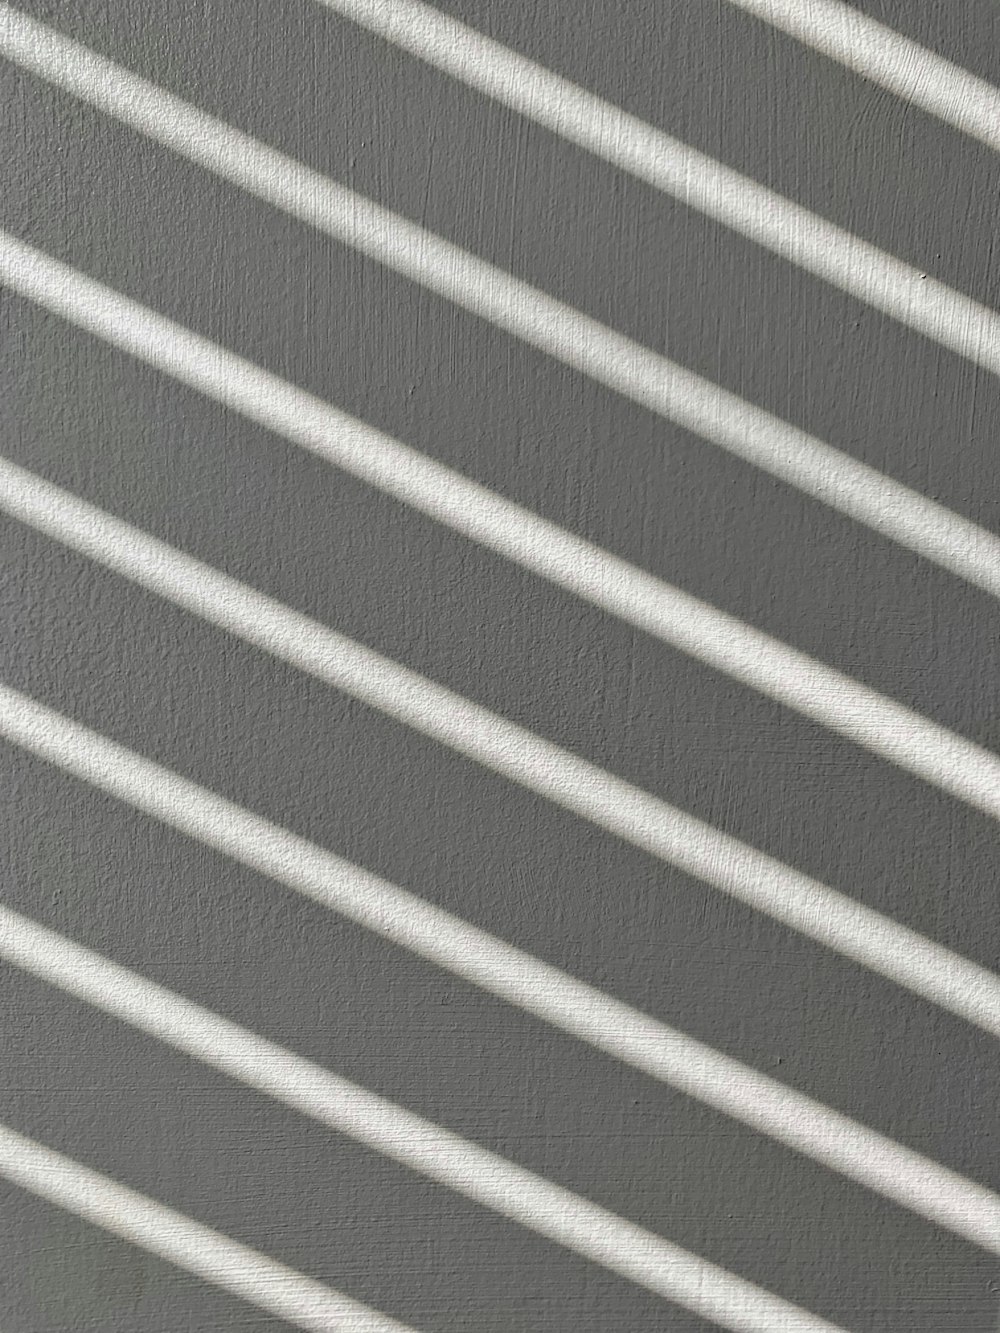 tecido listrado branco e cinzento